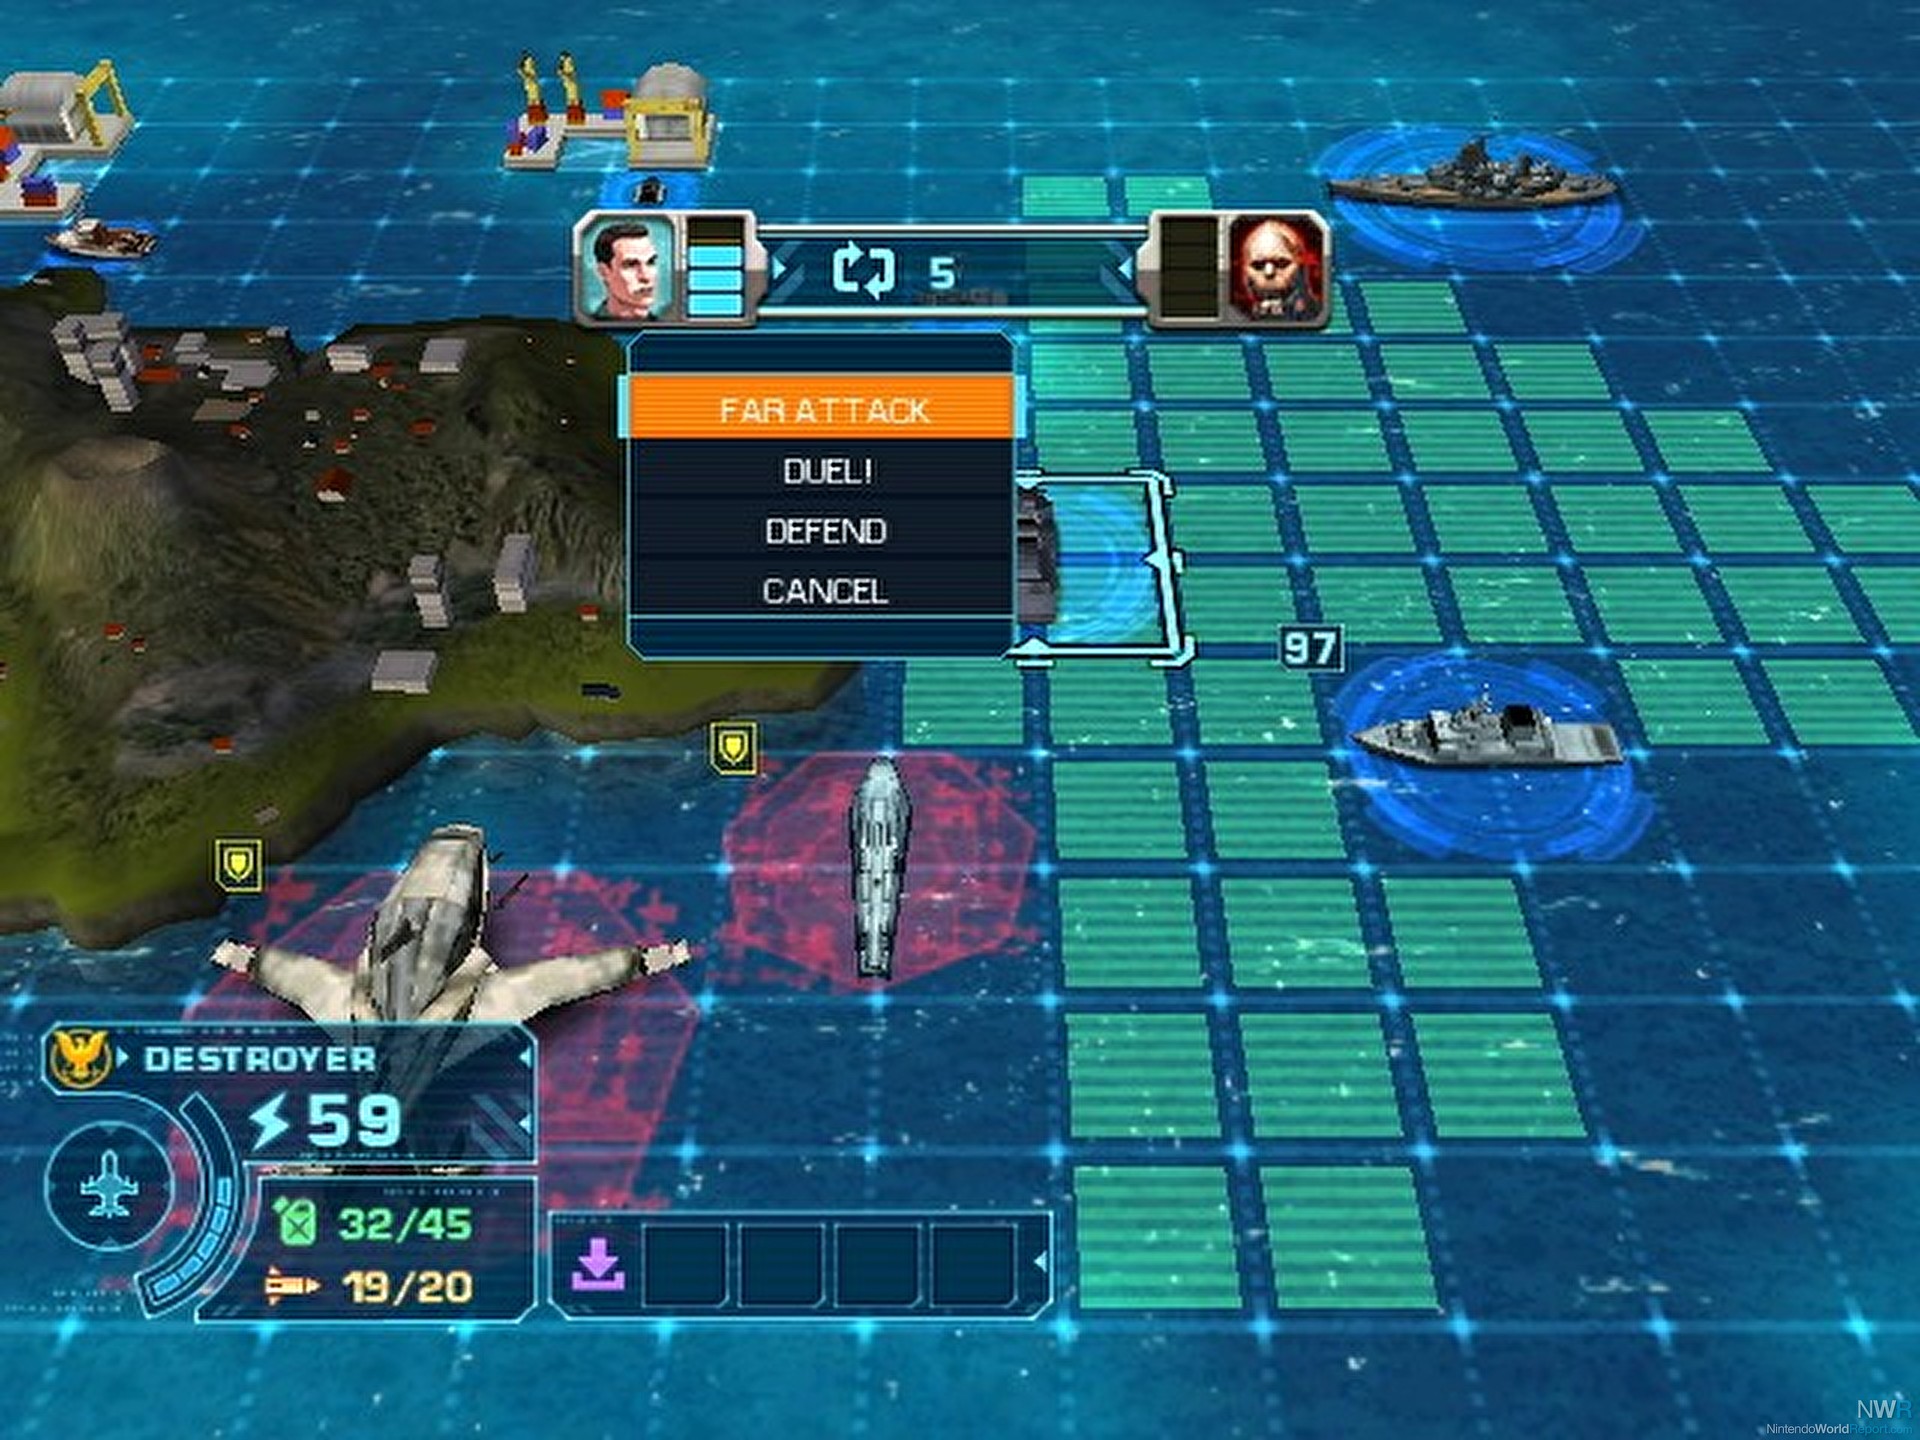 battleship video game